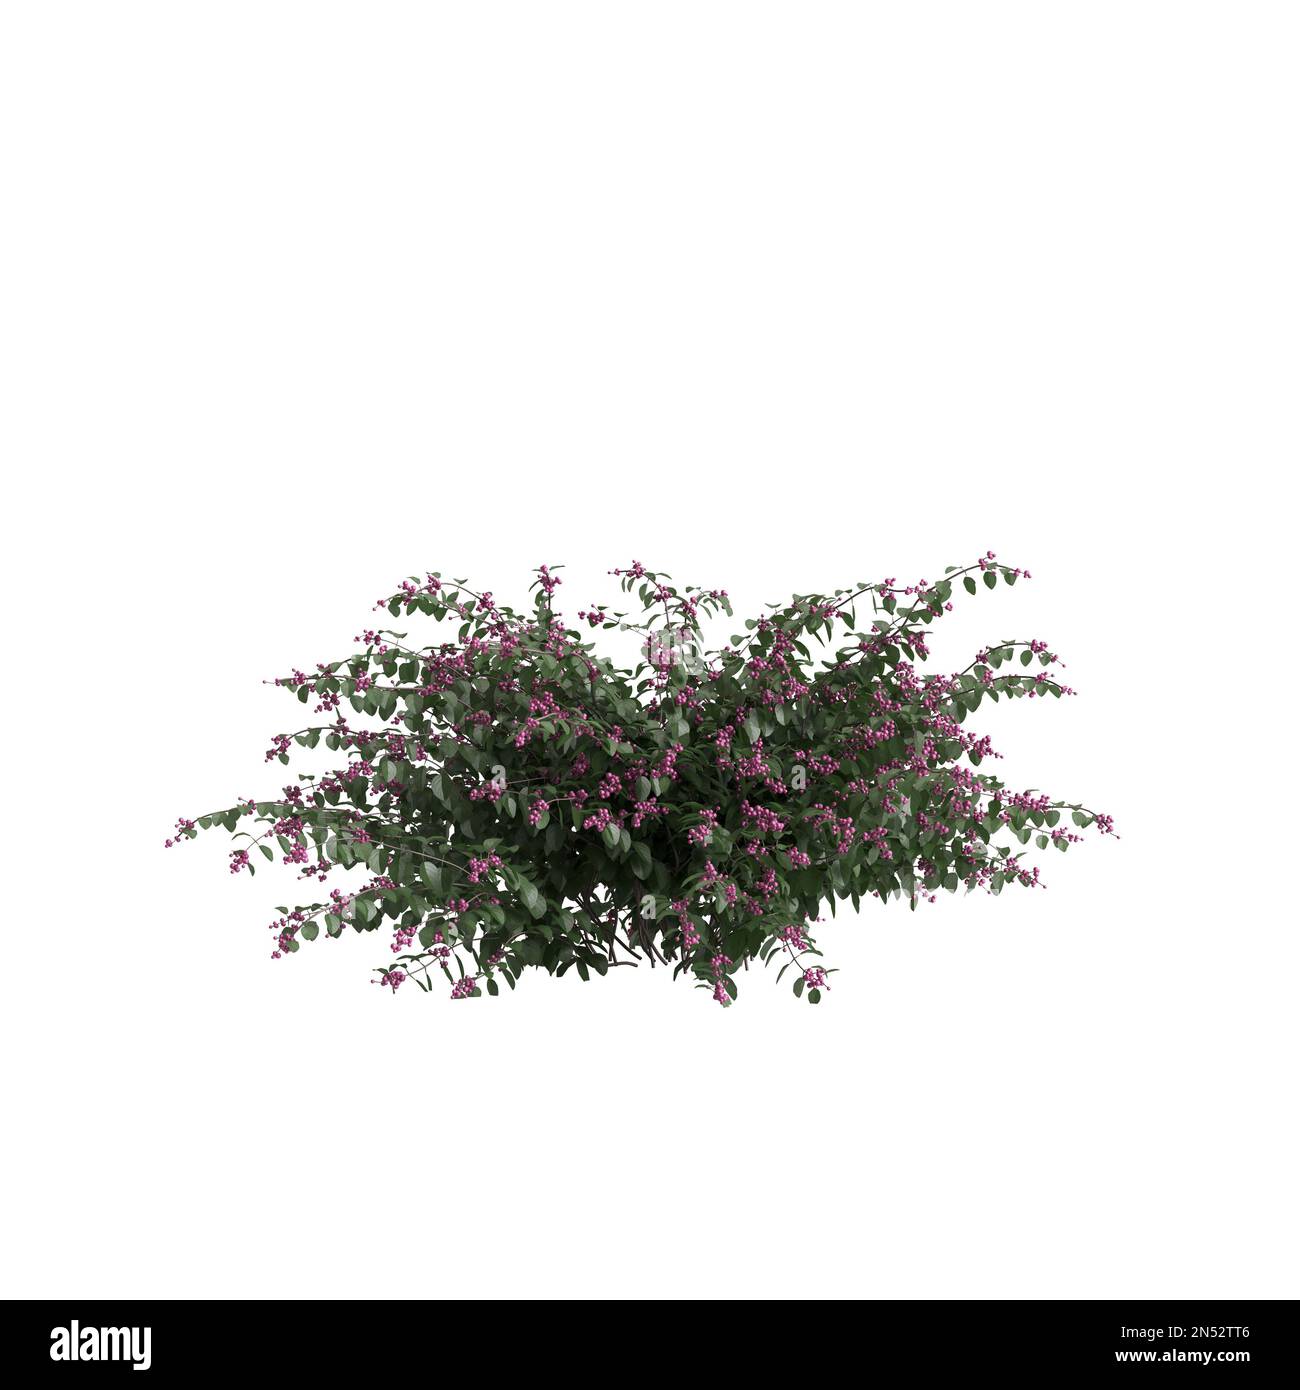 3d illustration of symphoricarpos doorenbosii bush isolated on white background Stock Photo